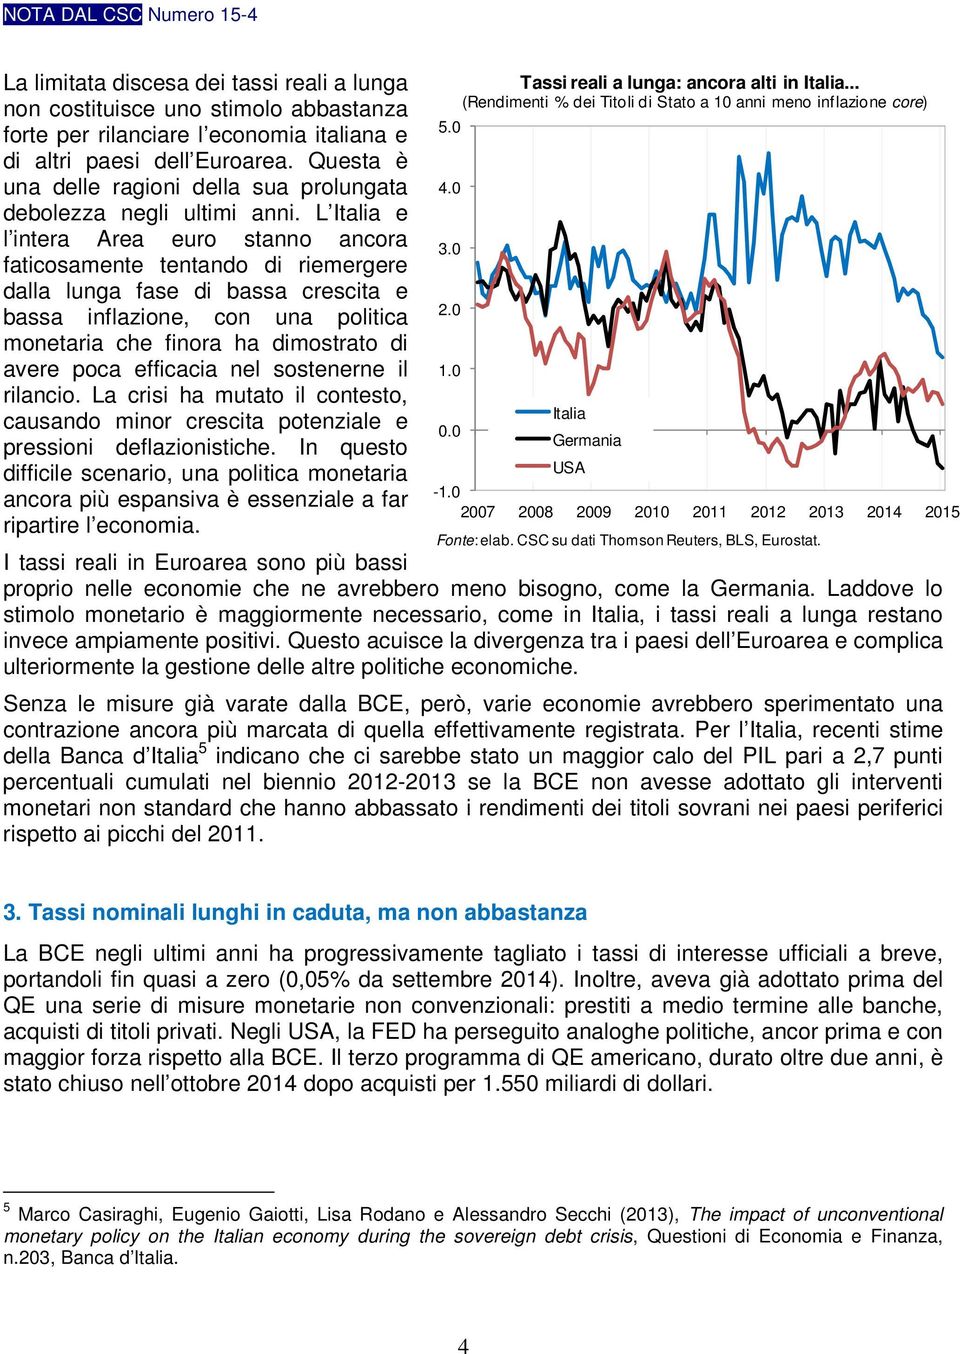 L Italia e l intera Area euro stanno ancora faticosamente tentando di riemergere dalla lunga fase di bassa crescita e bassa inflazione, con una politica monetaria che finora ha dimostrato di avere